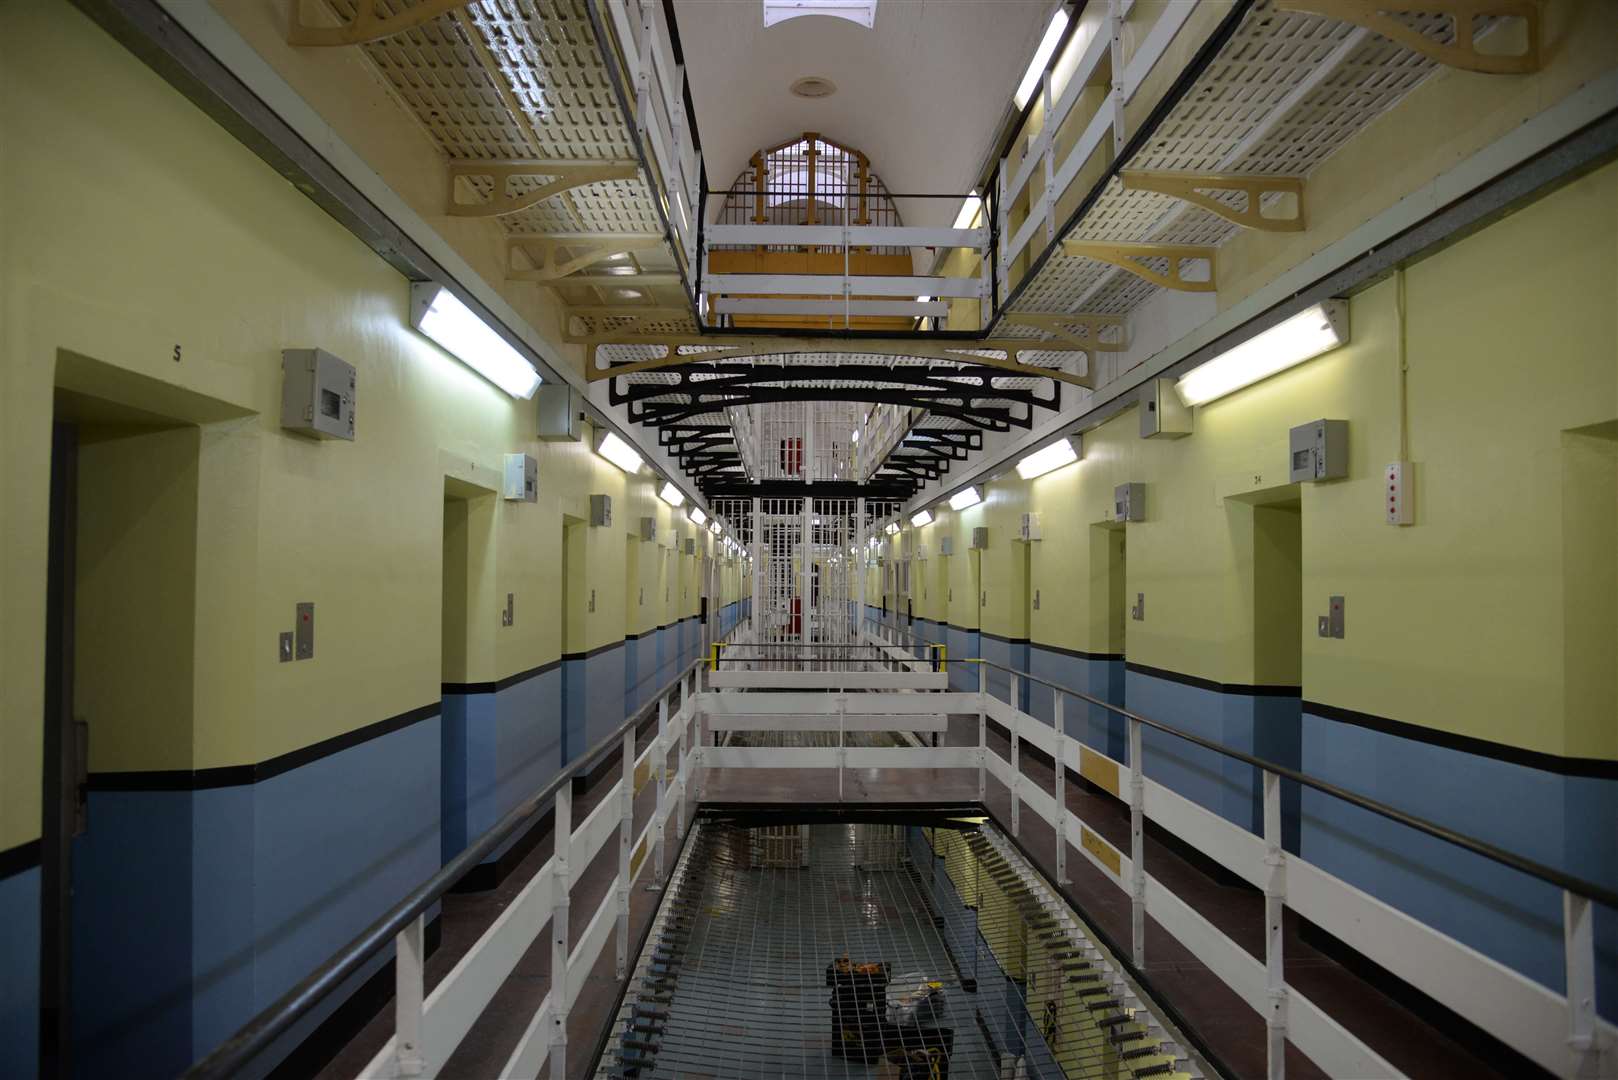 hm prison canterbury